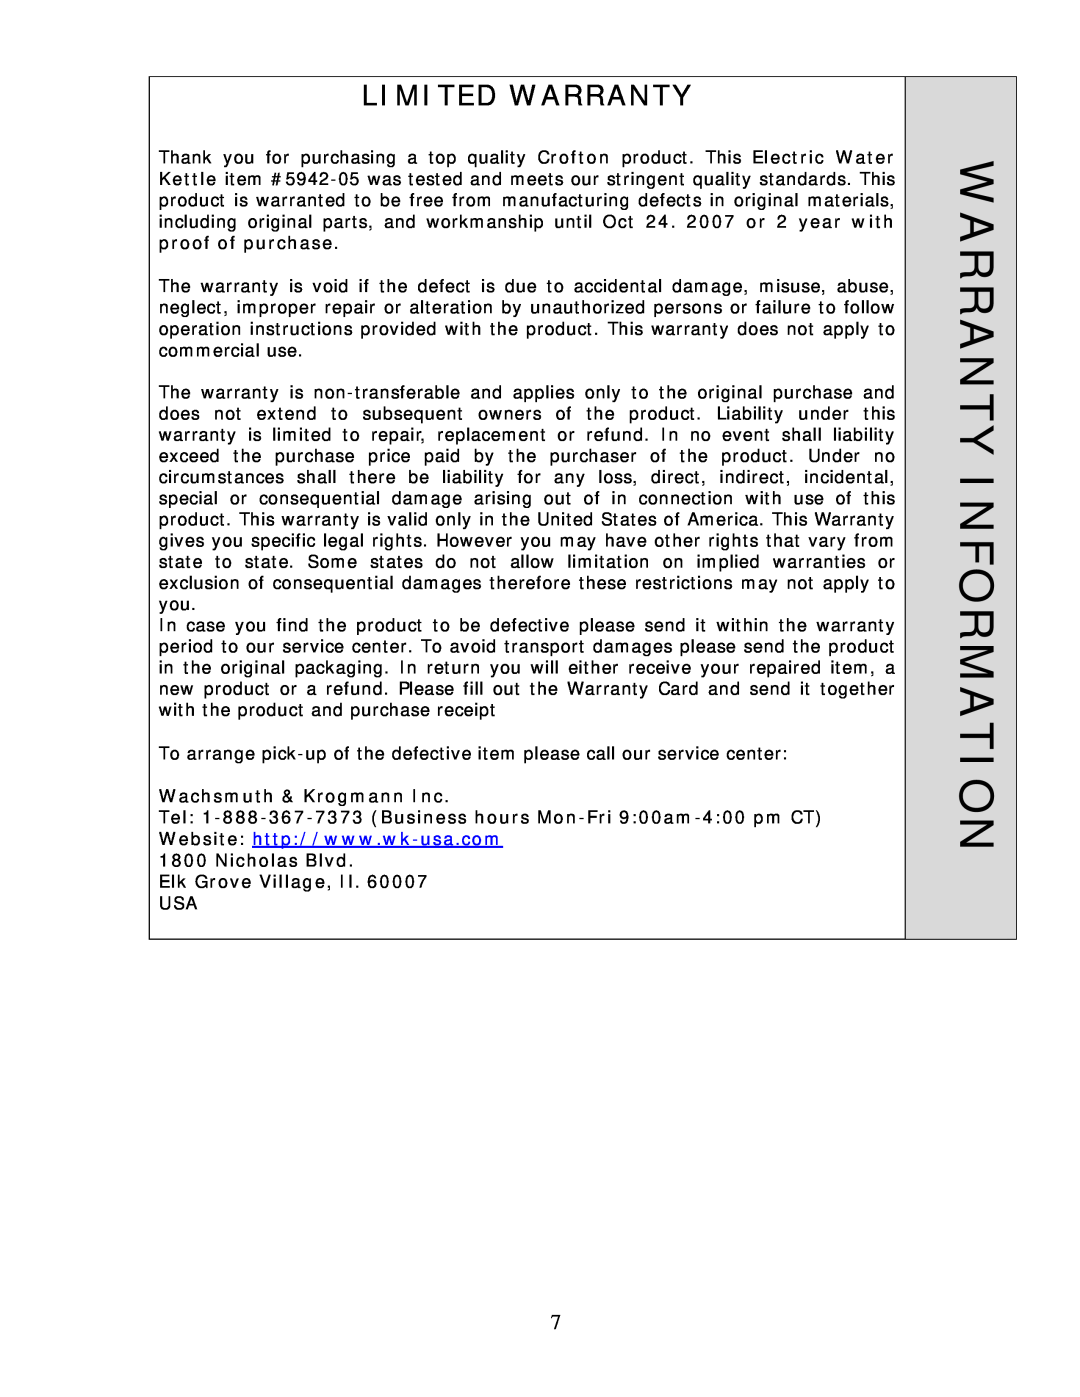 Wachsmuth & Krogmann XB6168 manual Warranty Information, Limited Warranty 